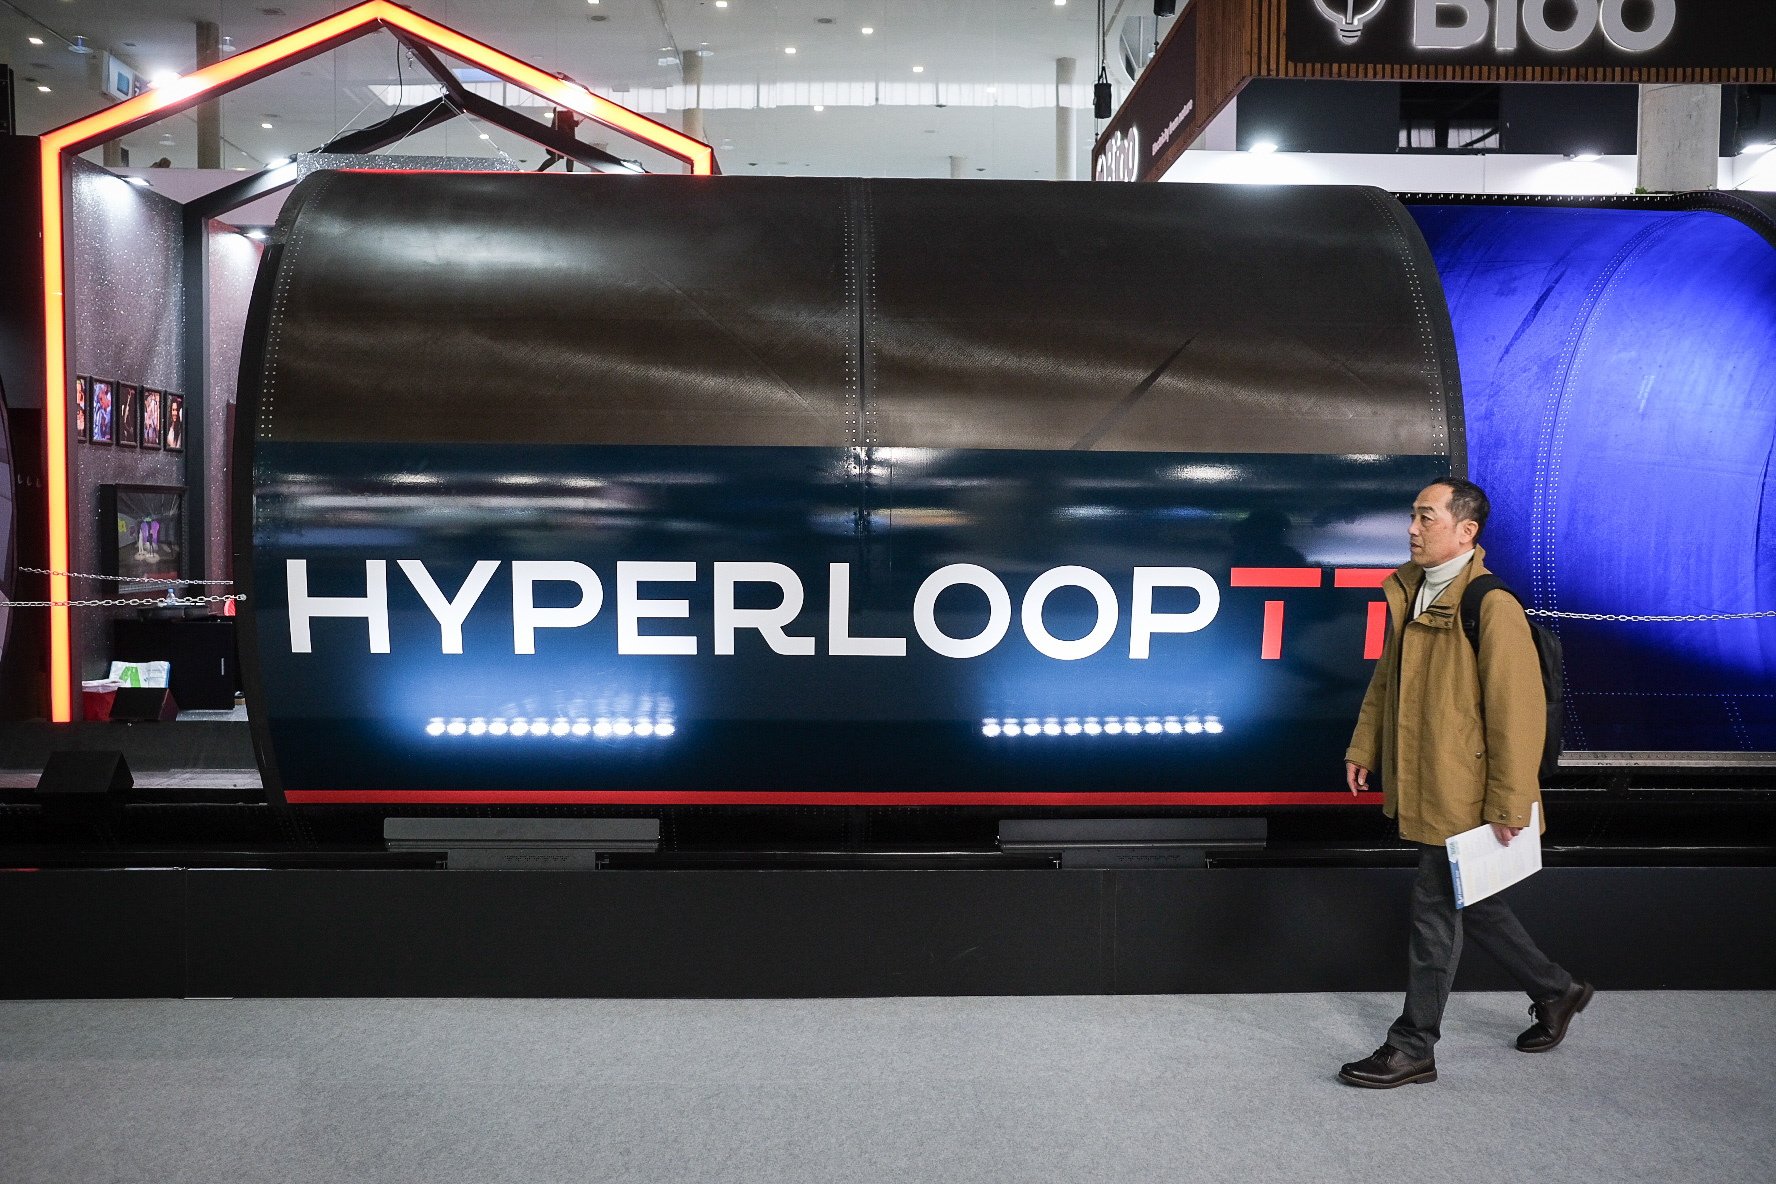 Així és Hyperloop, el tren 'bala' que podria connectar Barcelona i Madrid en 30 minuts